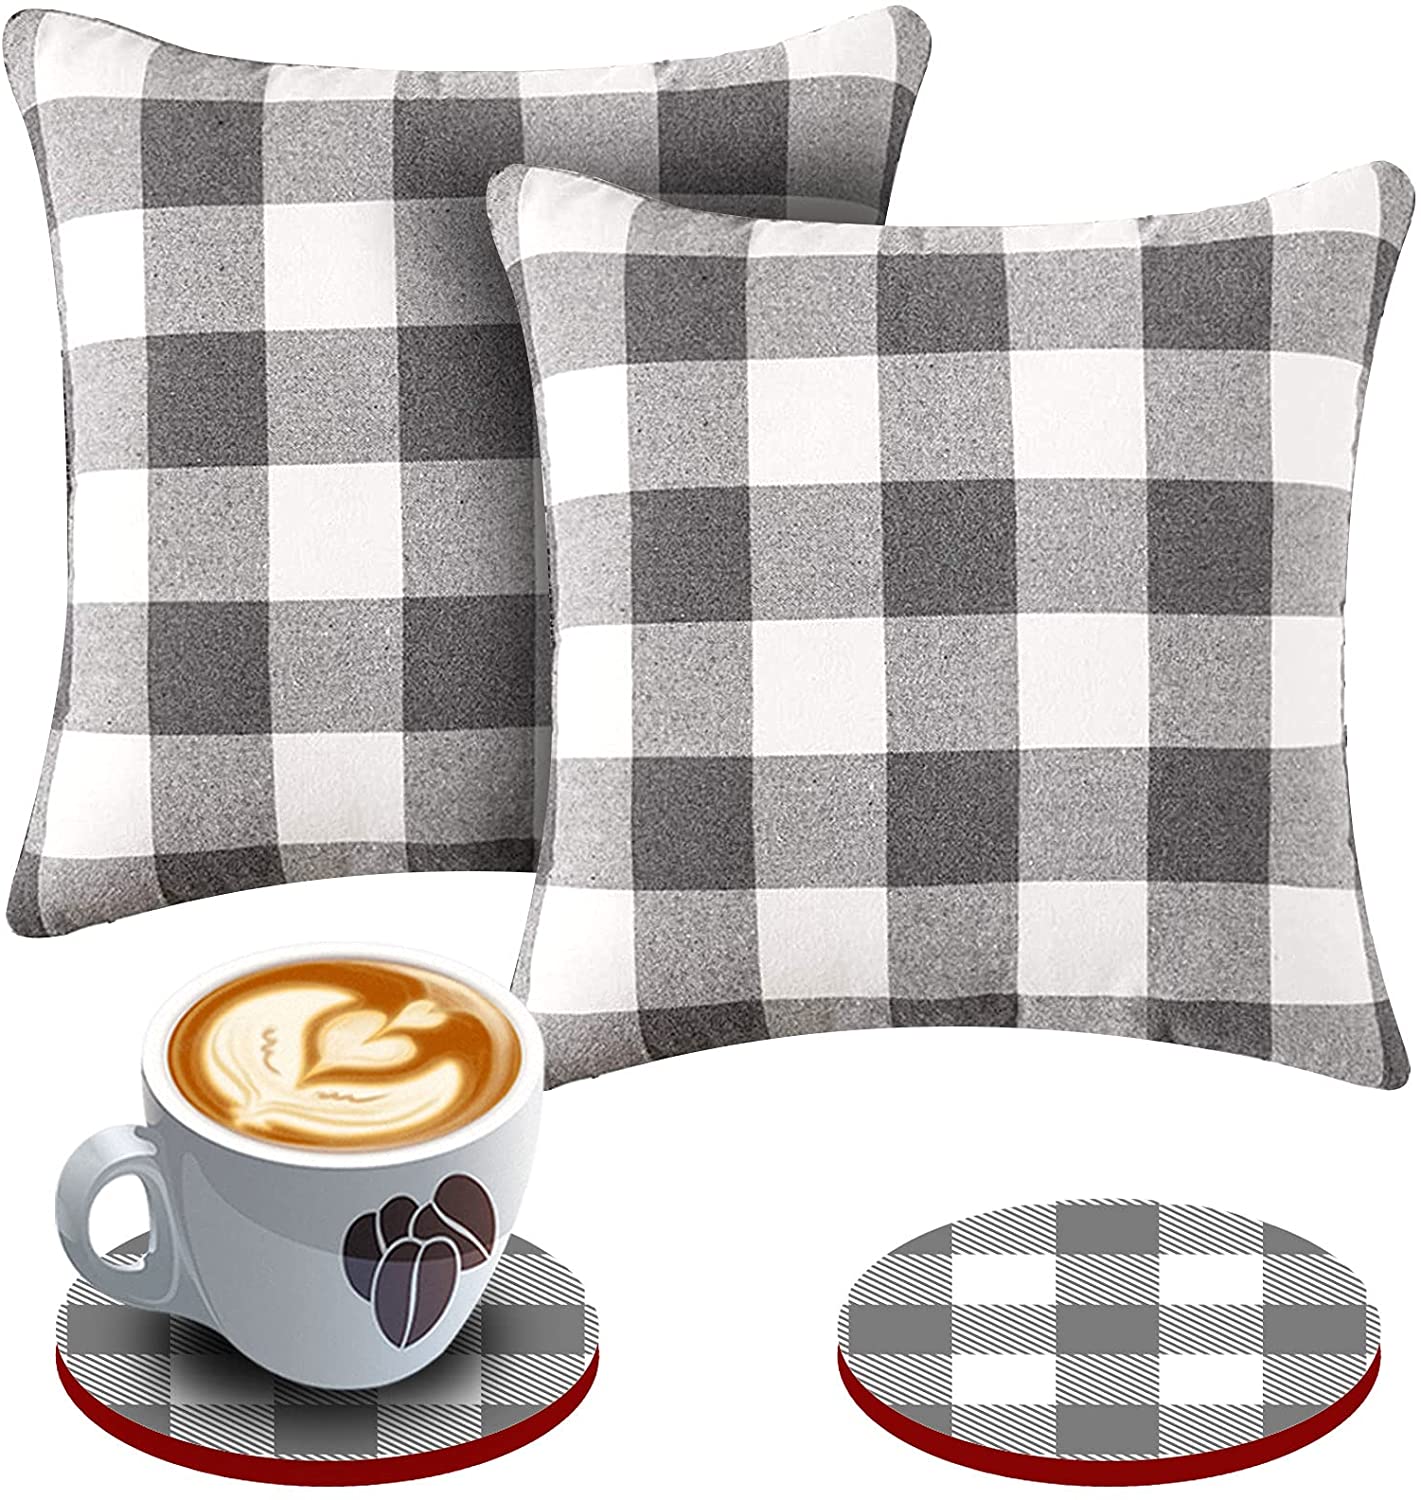 Set of 2 Farmhouse Buffalo Check Throw Pillow Covers 18 x 18 with 2 Bonus Coasters (Grey & White)